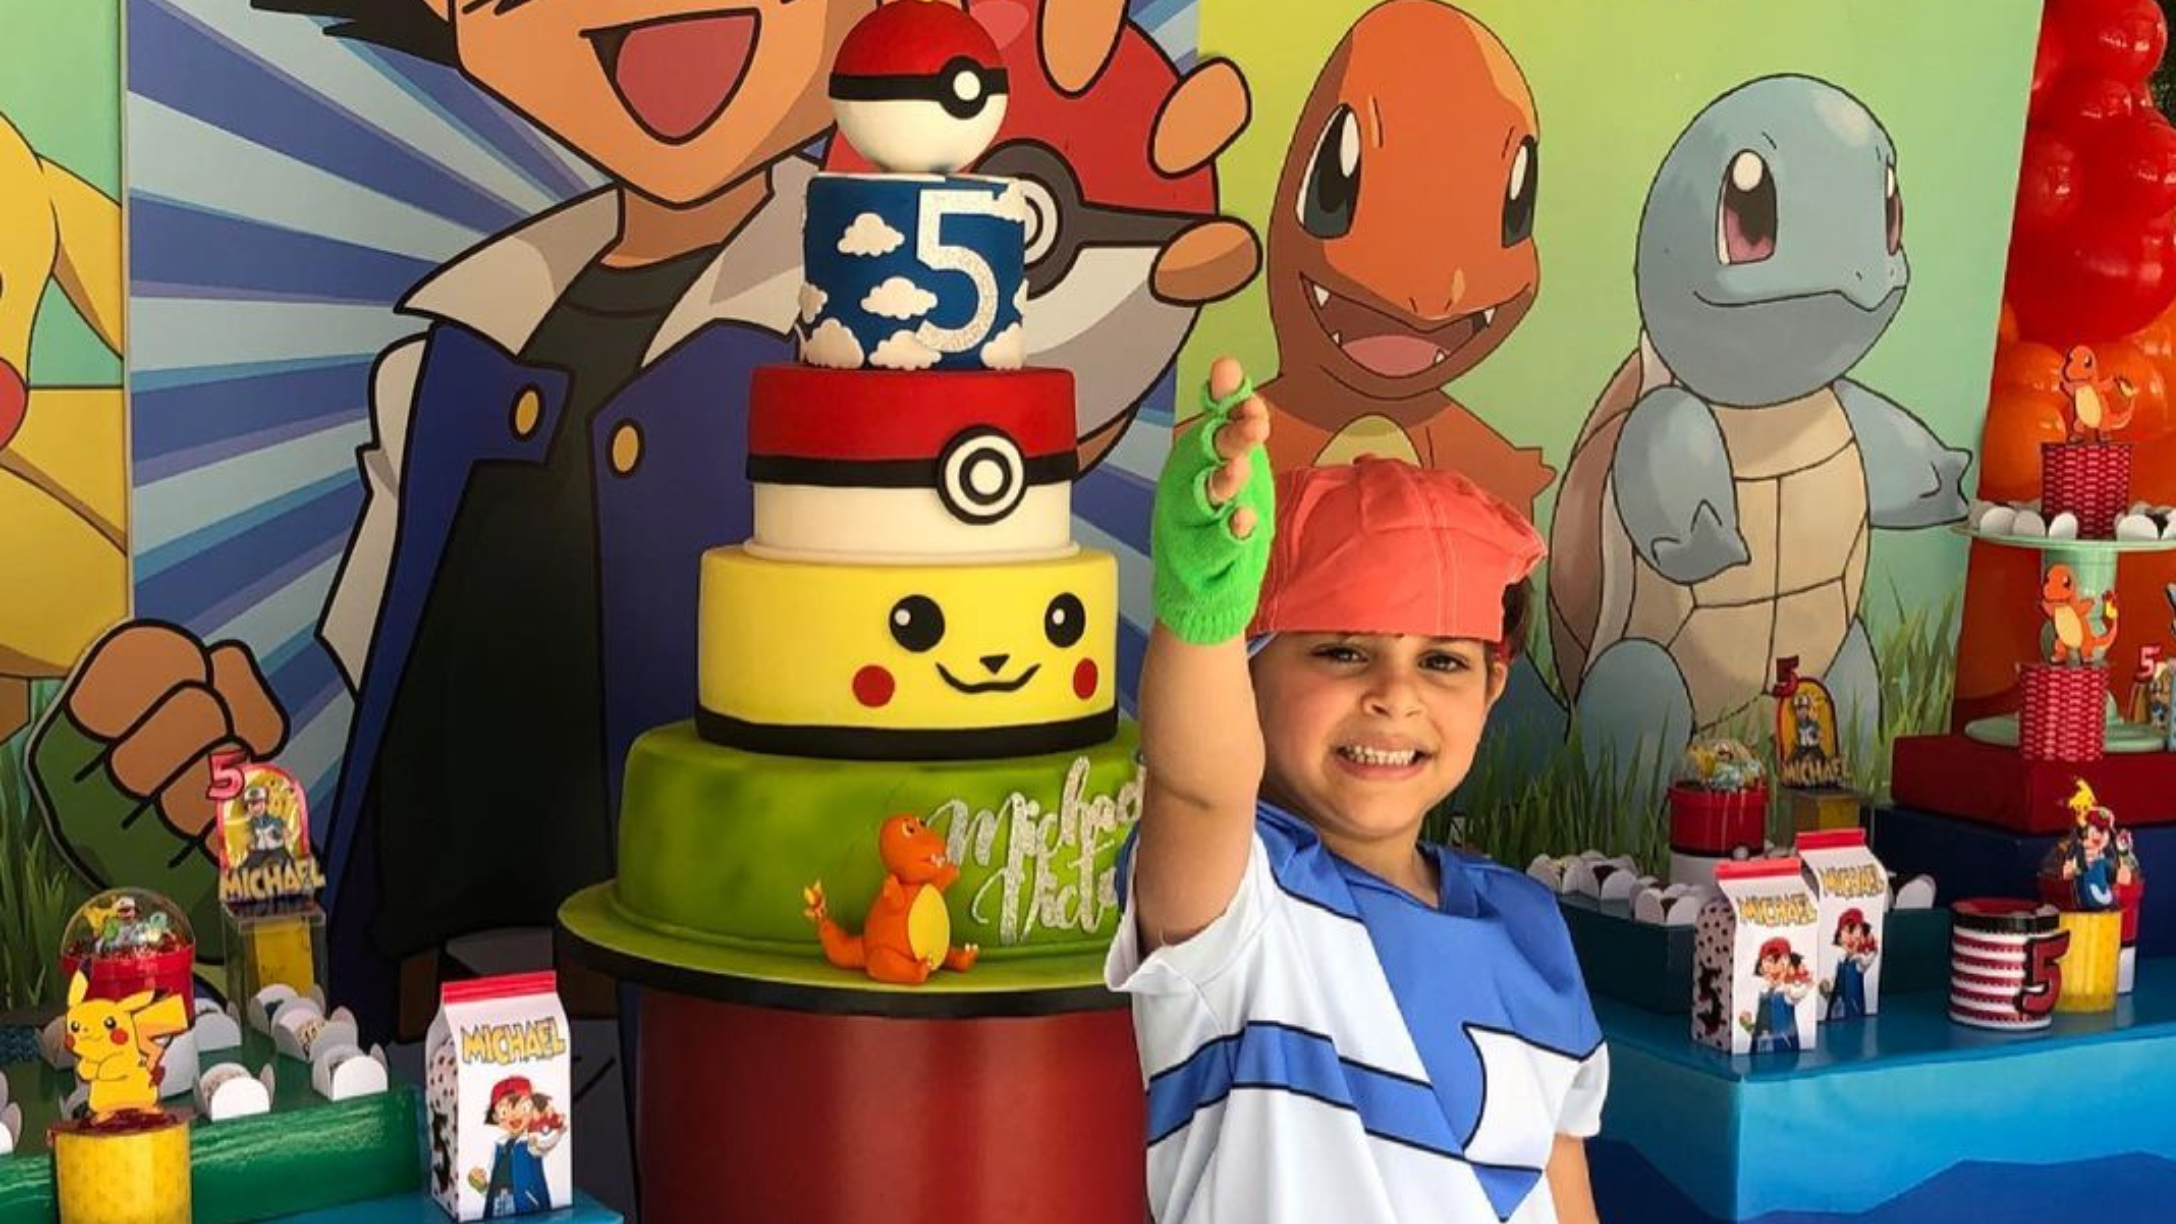 Lourdes Stephen celebra cumpleaños de su hijo con divertida fiesta de  Pokémon